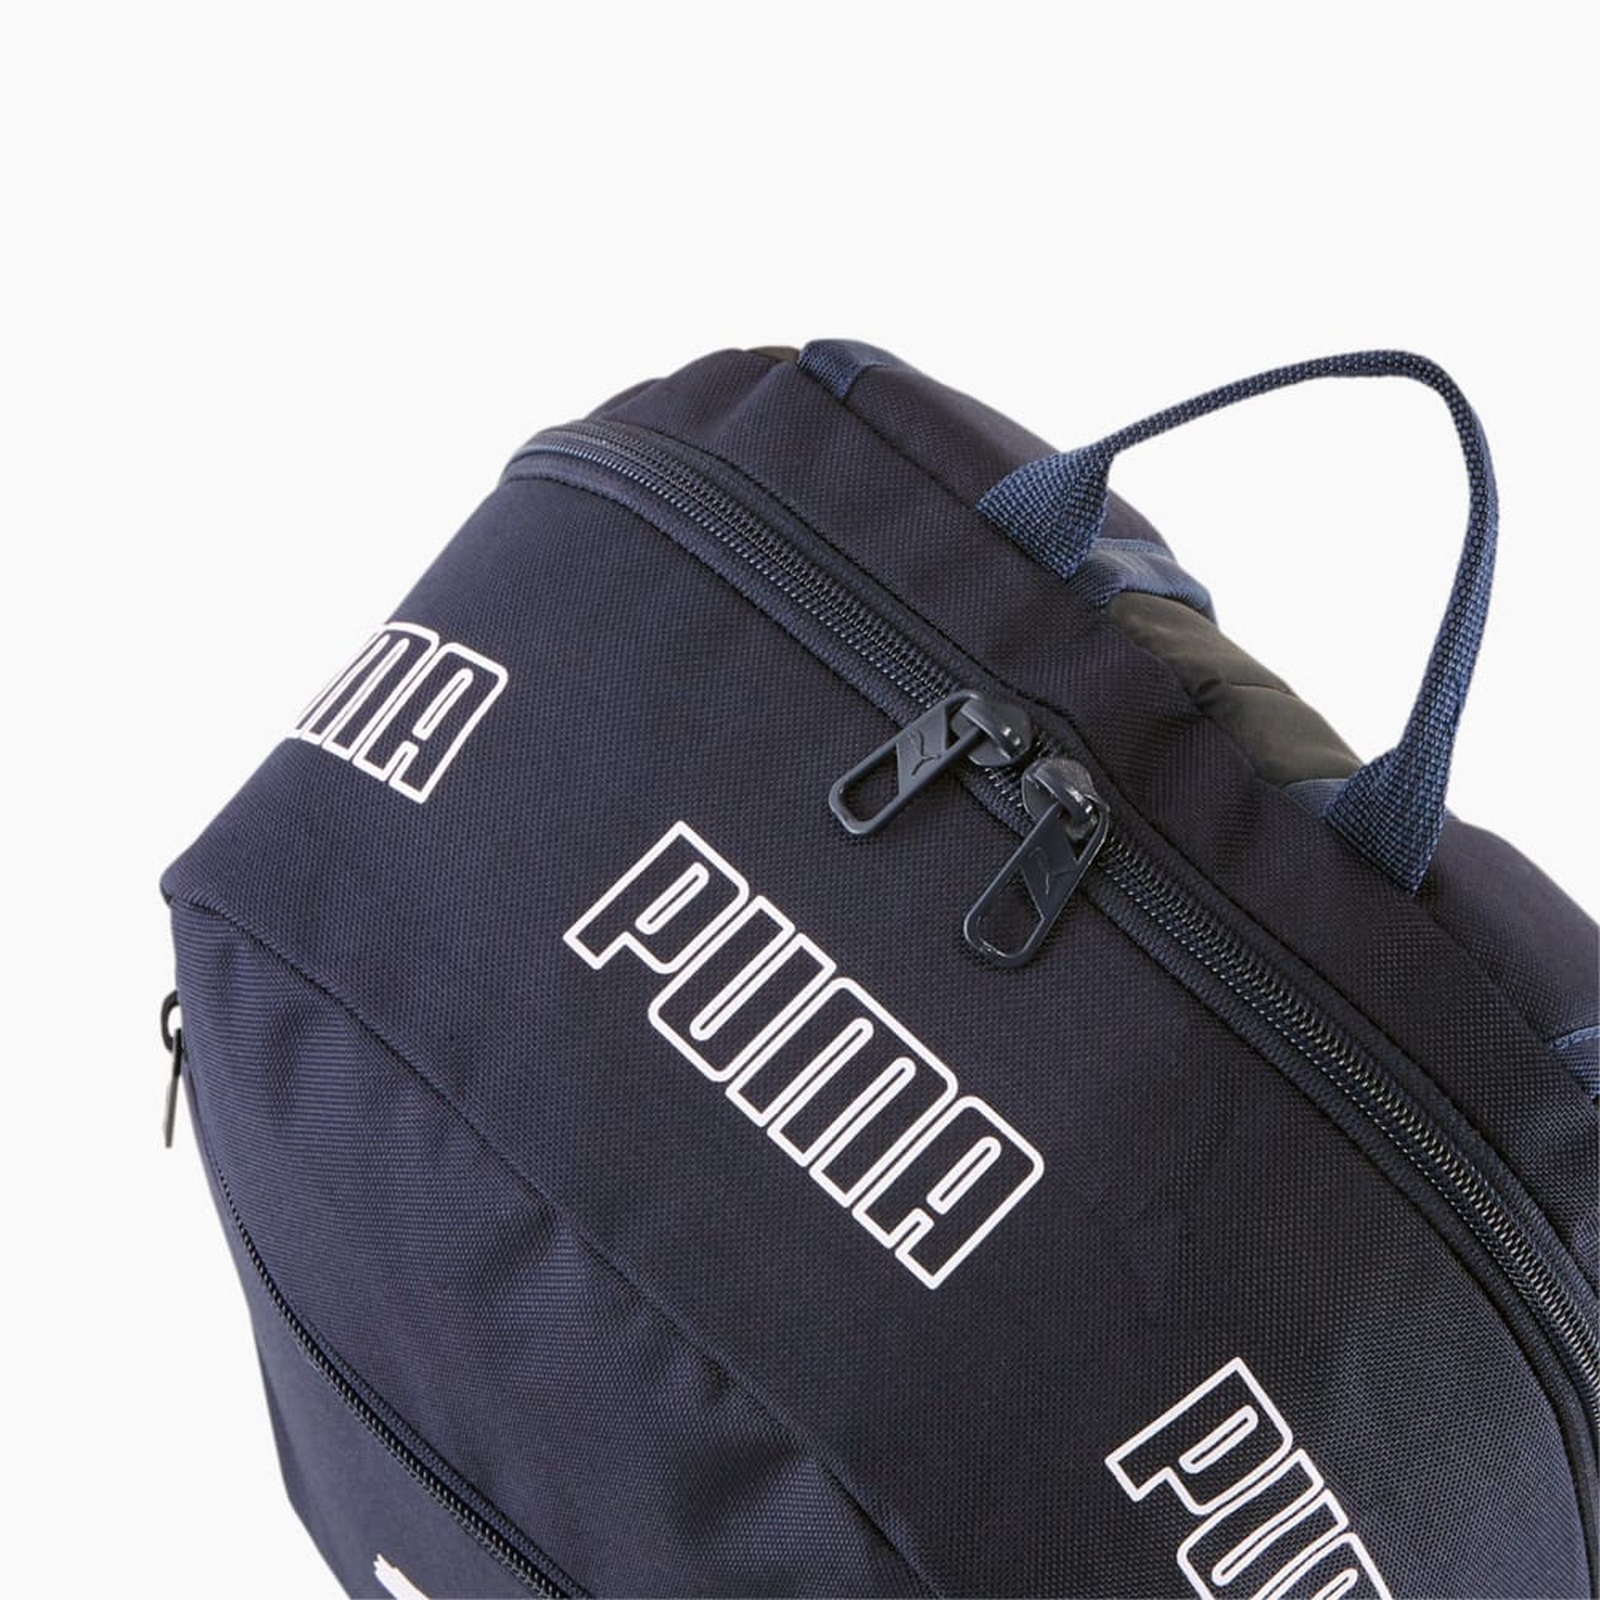 Рюкзак спортивный Phase Backpack II, полиэстер Puma 07729502 темно-синий 1600_1600